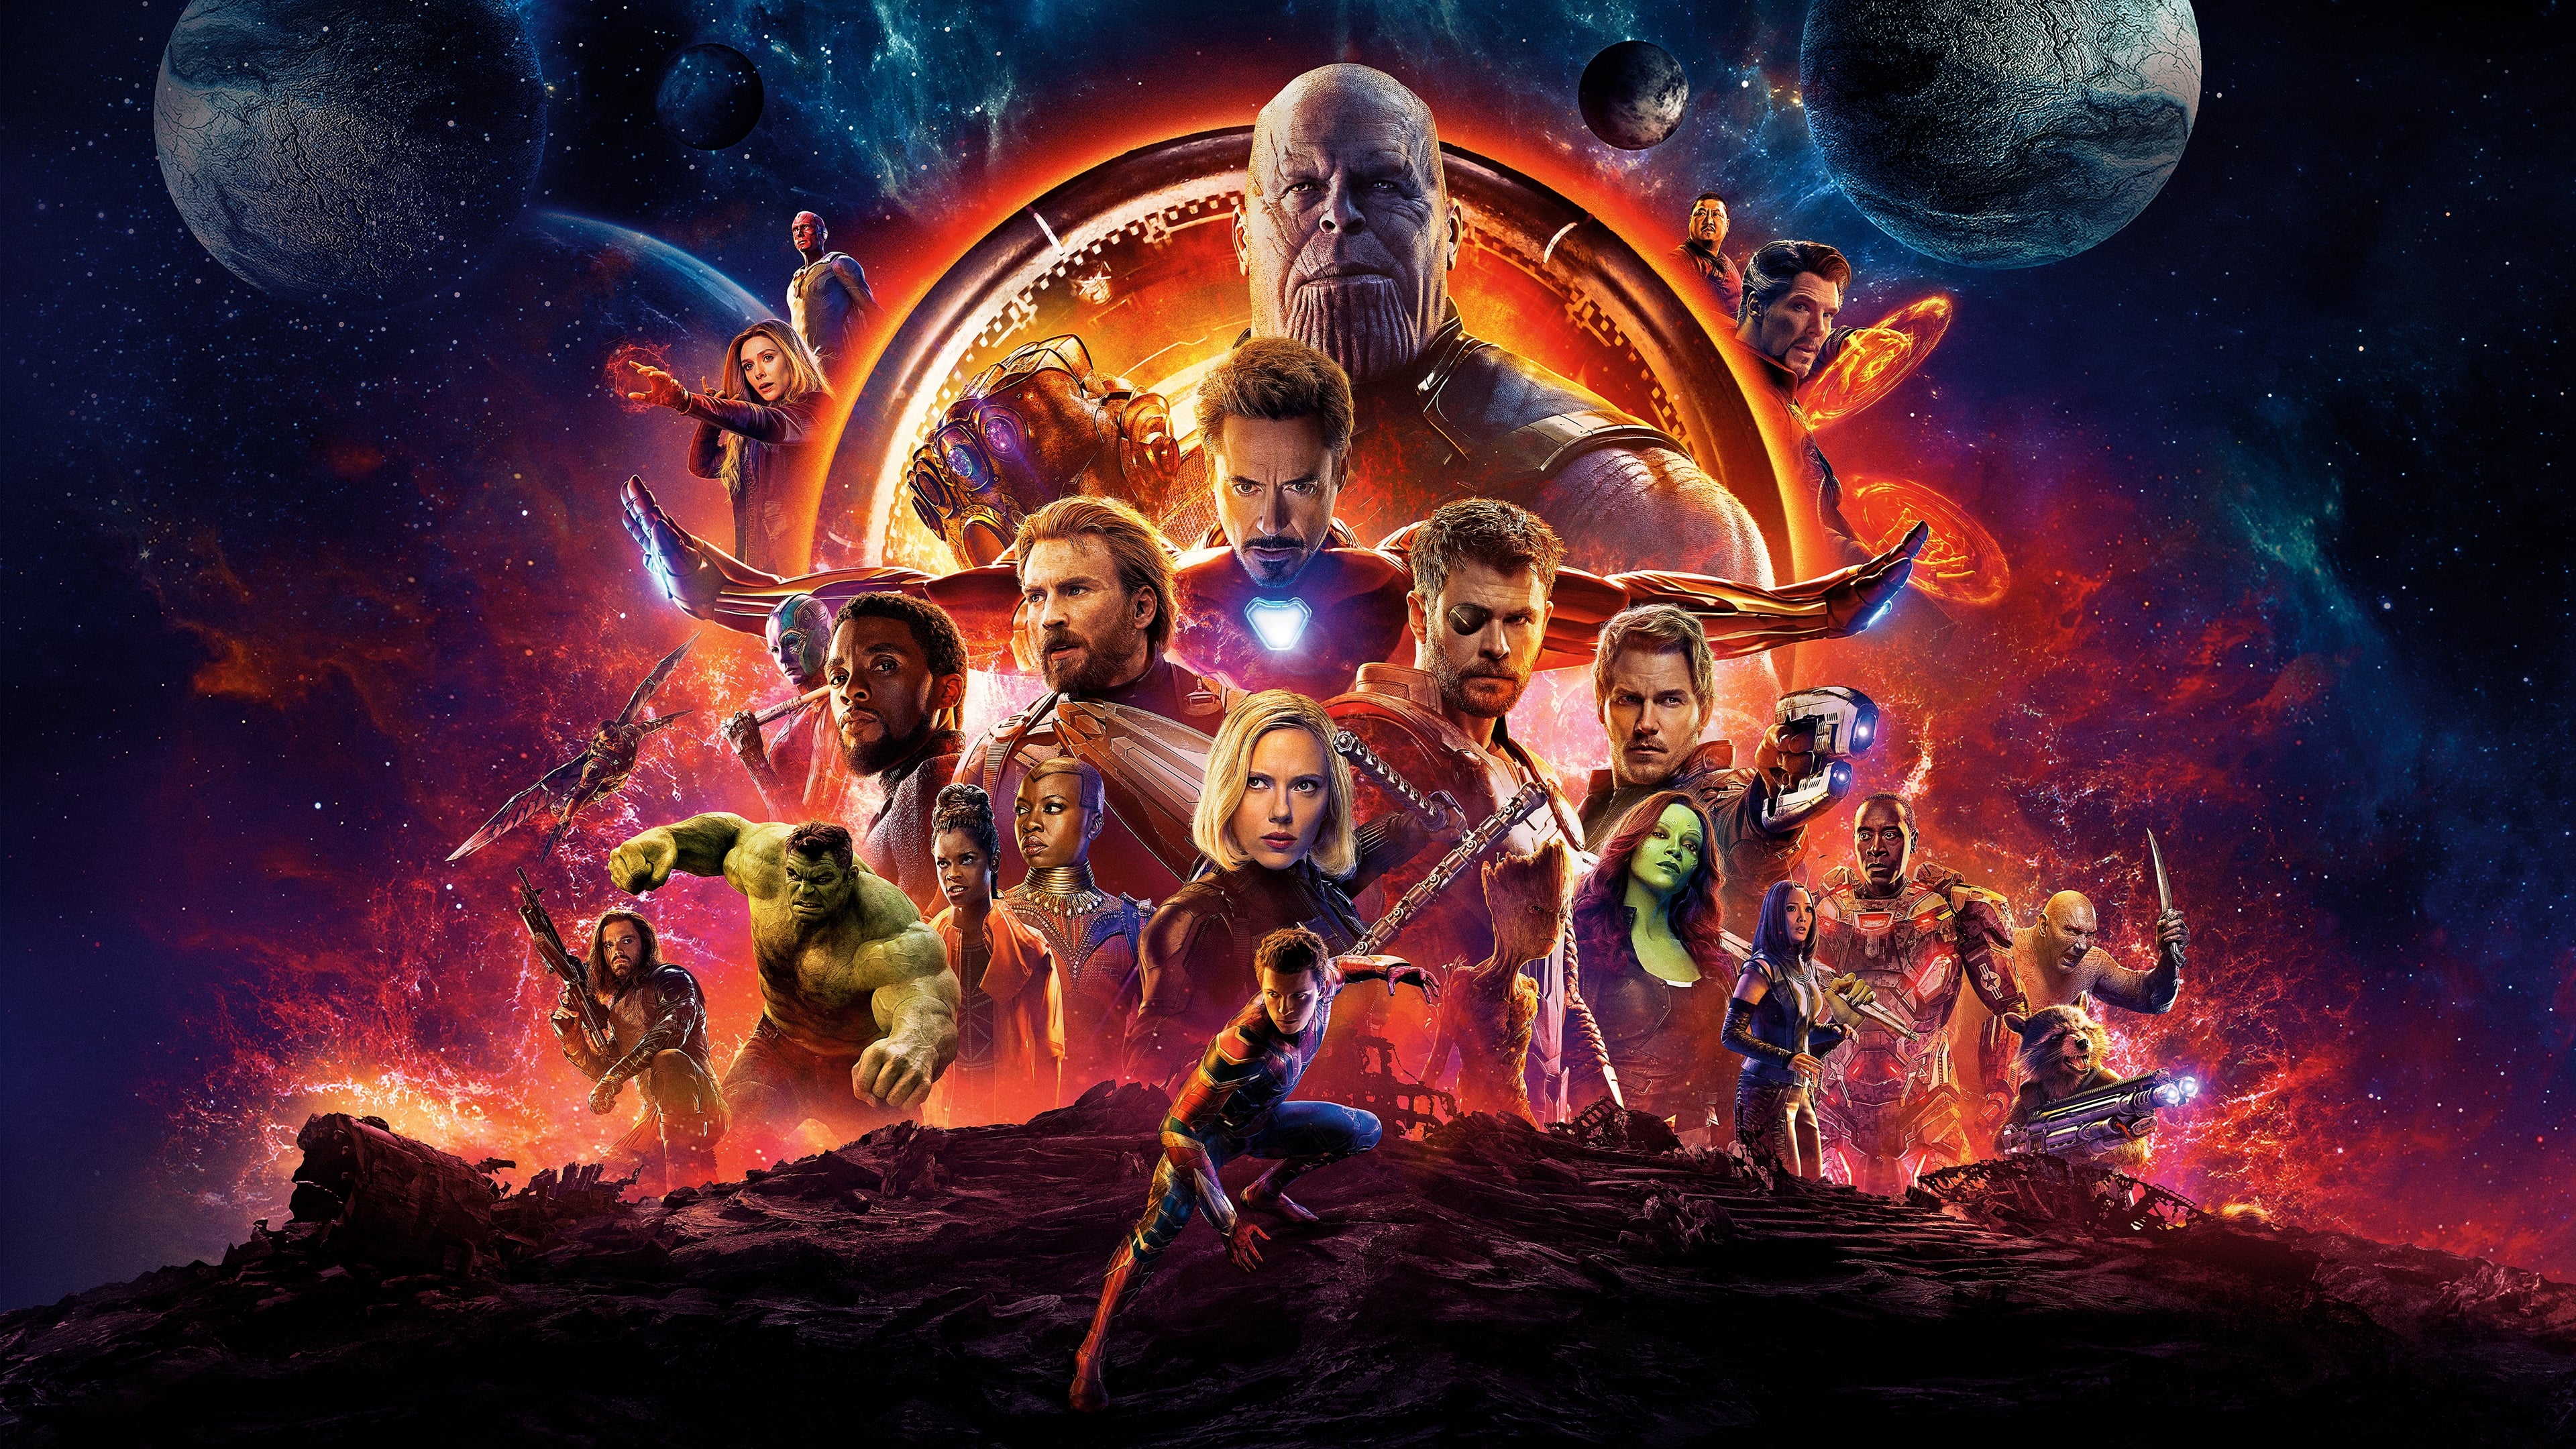 Biệt đội siêu anh hùng 3: cuộc chiến vô cực - Avengers: infinity war part i